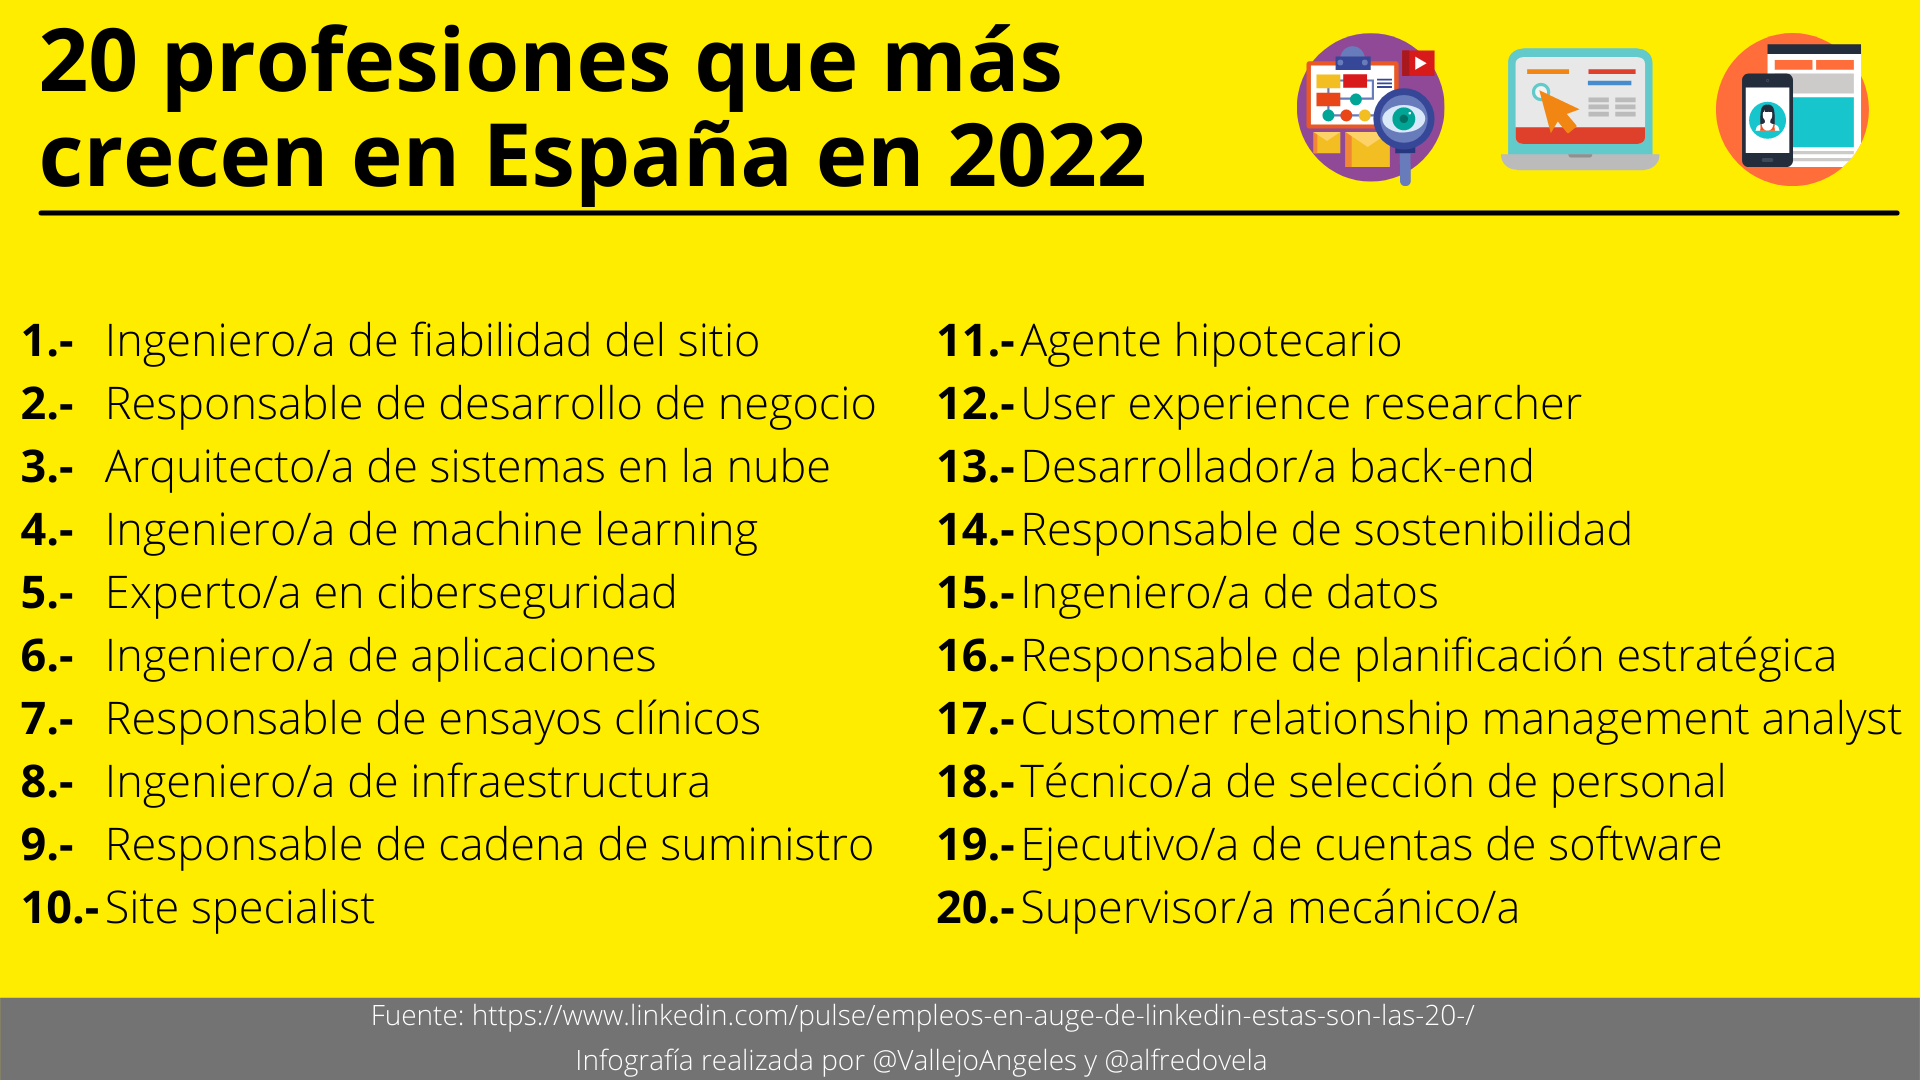 20 profesiones que más crecen en España en 2022 #infografia #OrientaciónLaboral #RRHH